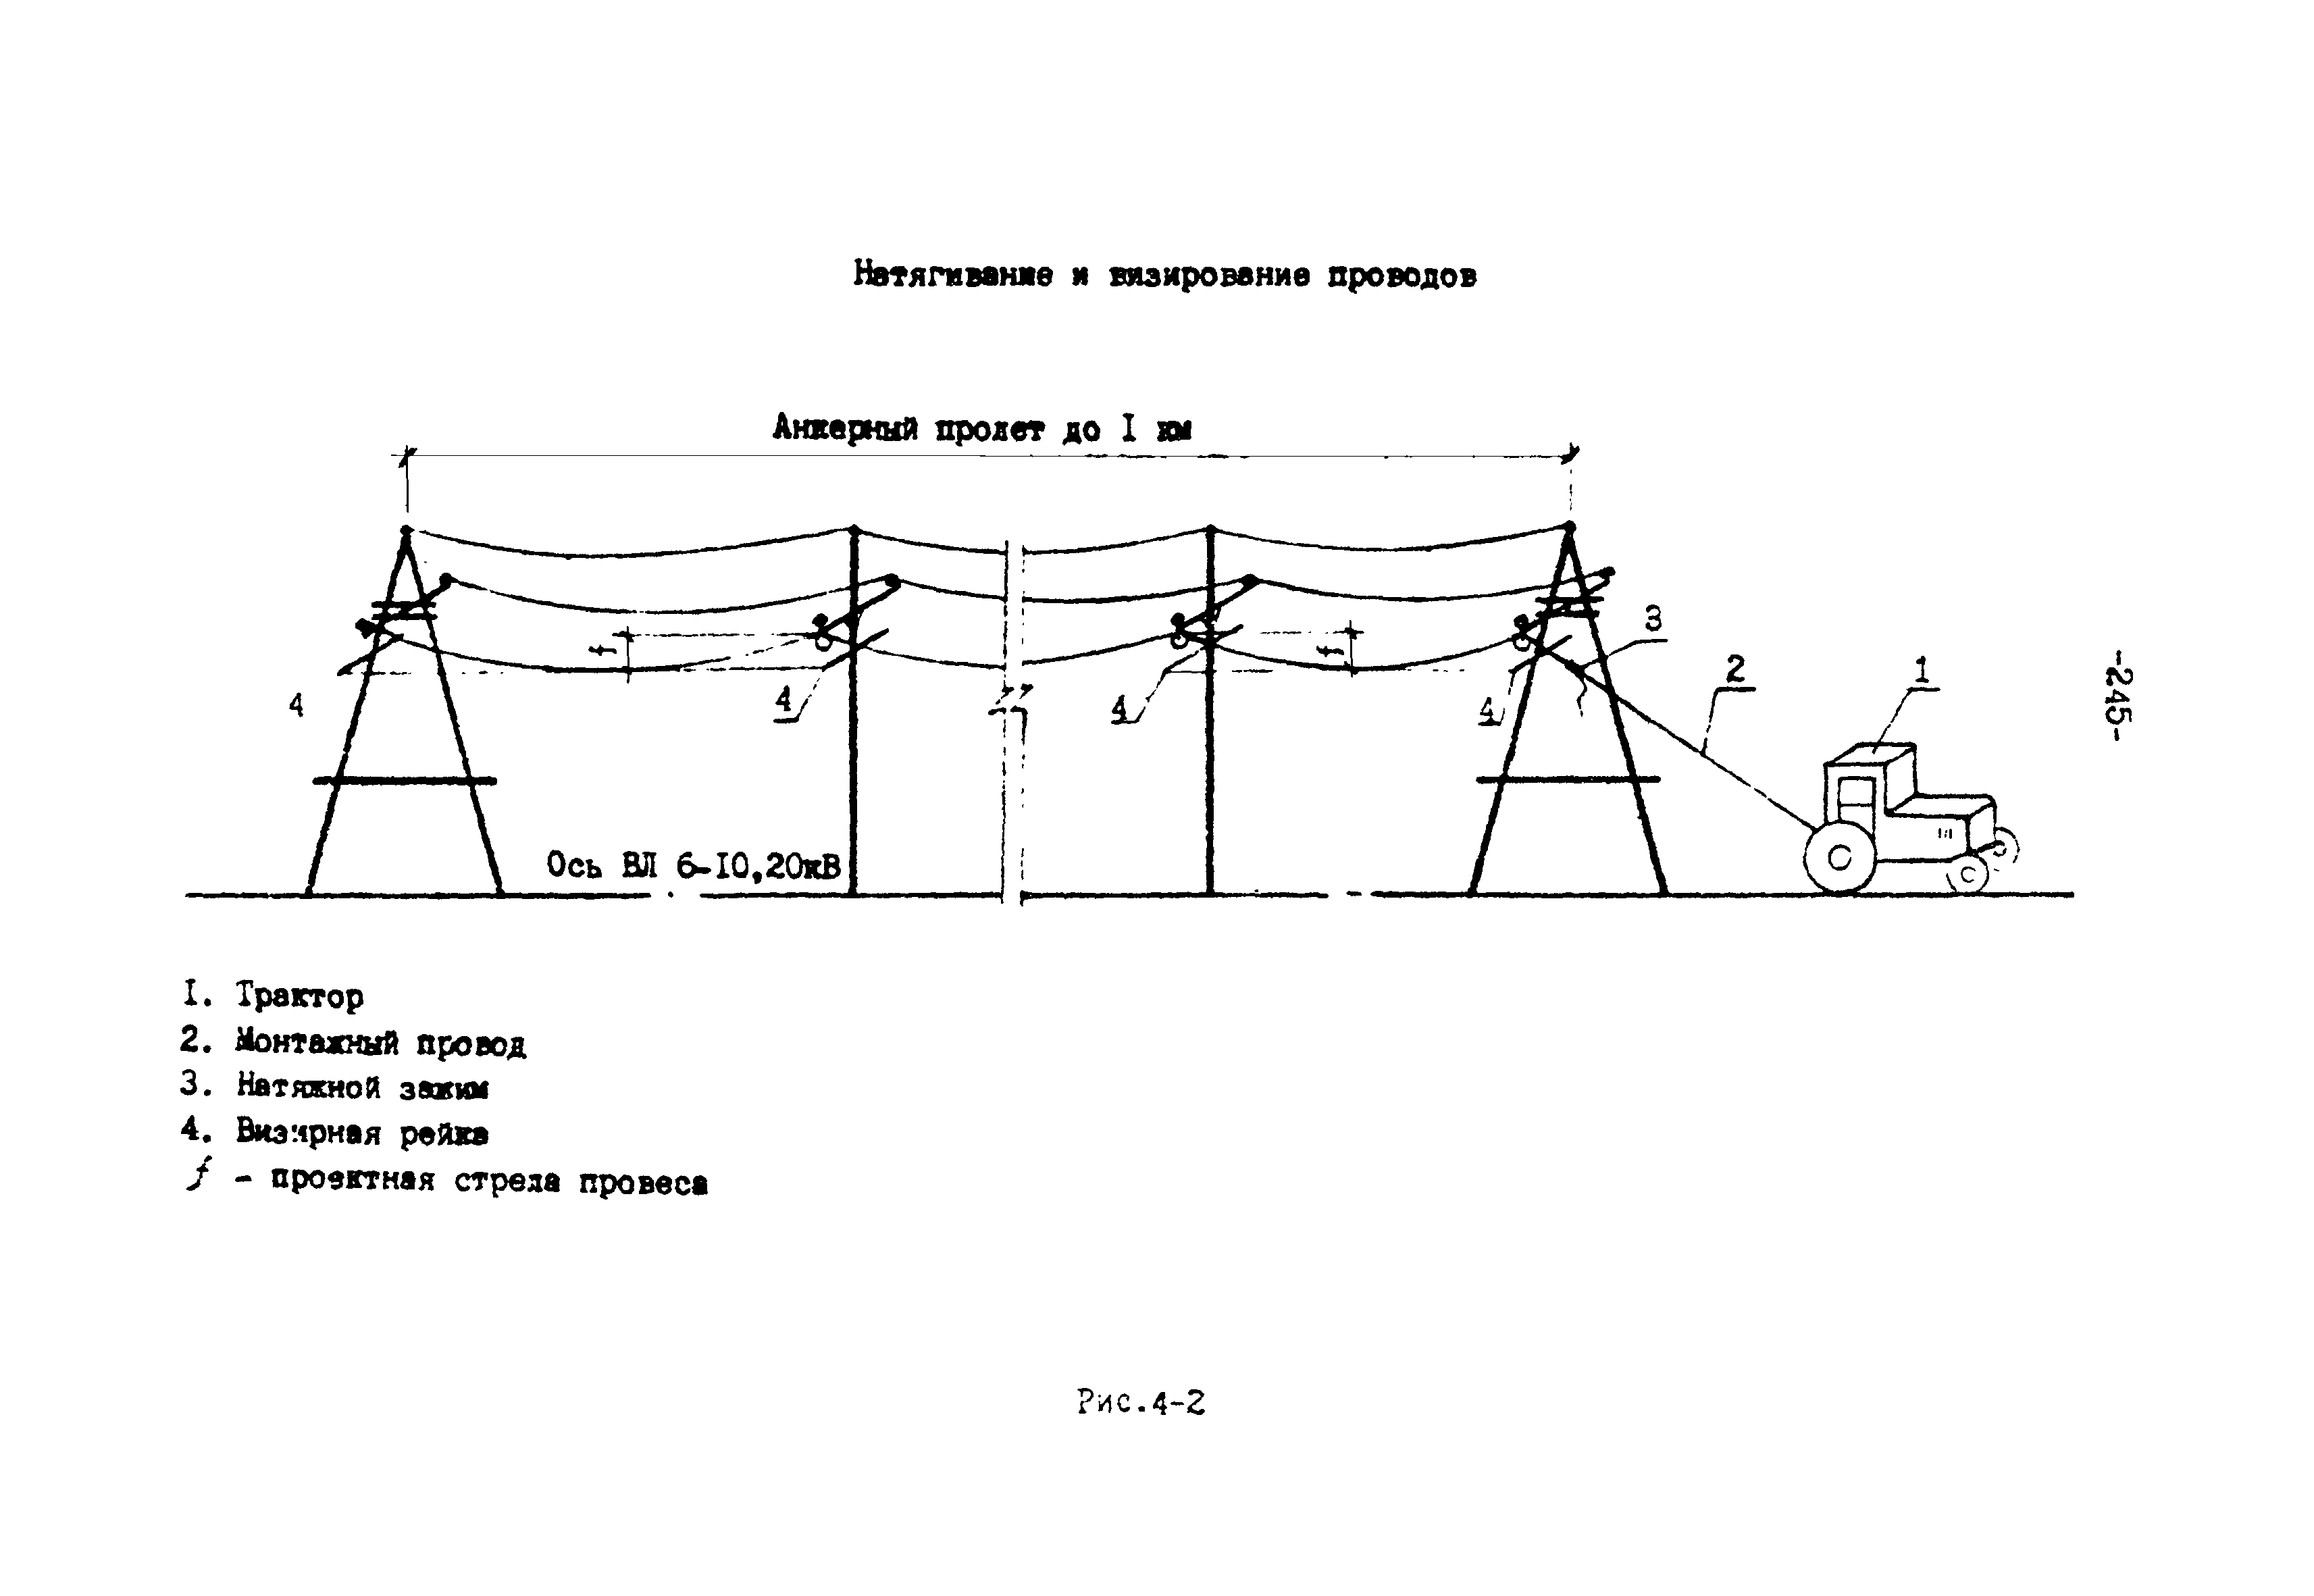 Технология монтажа провода сип-3 на опорах вл 6-10кв.